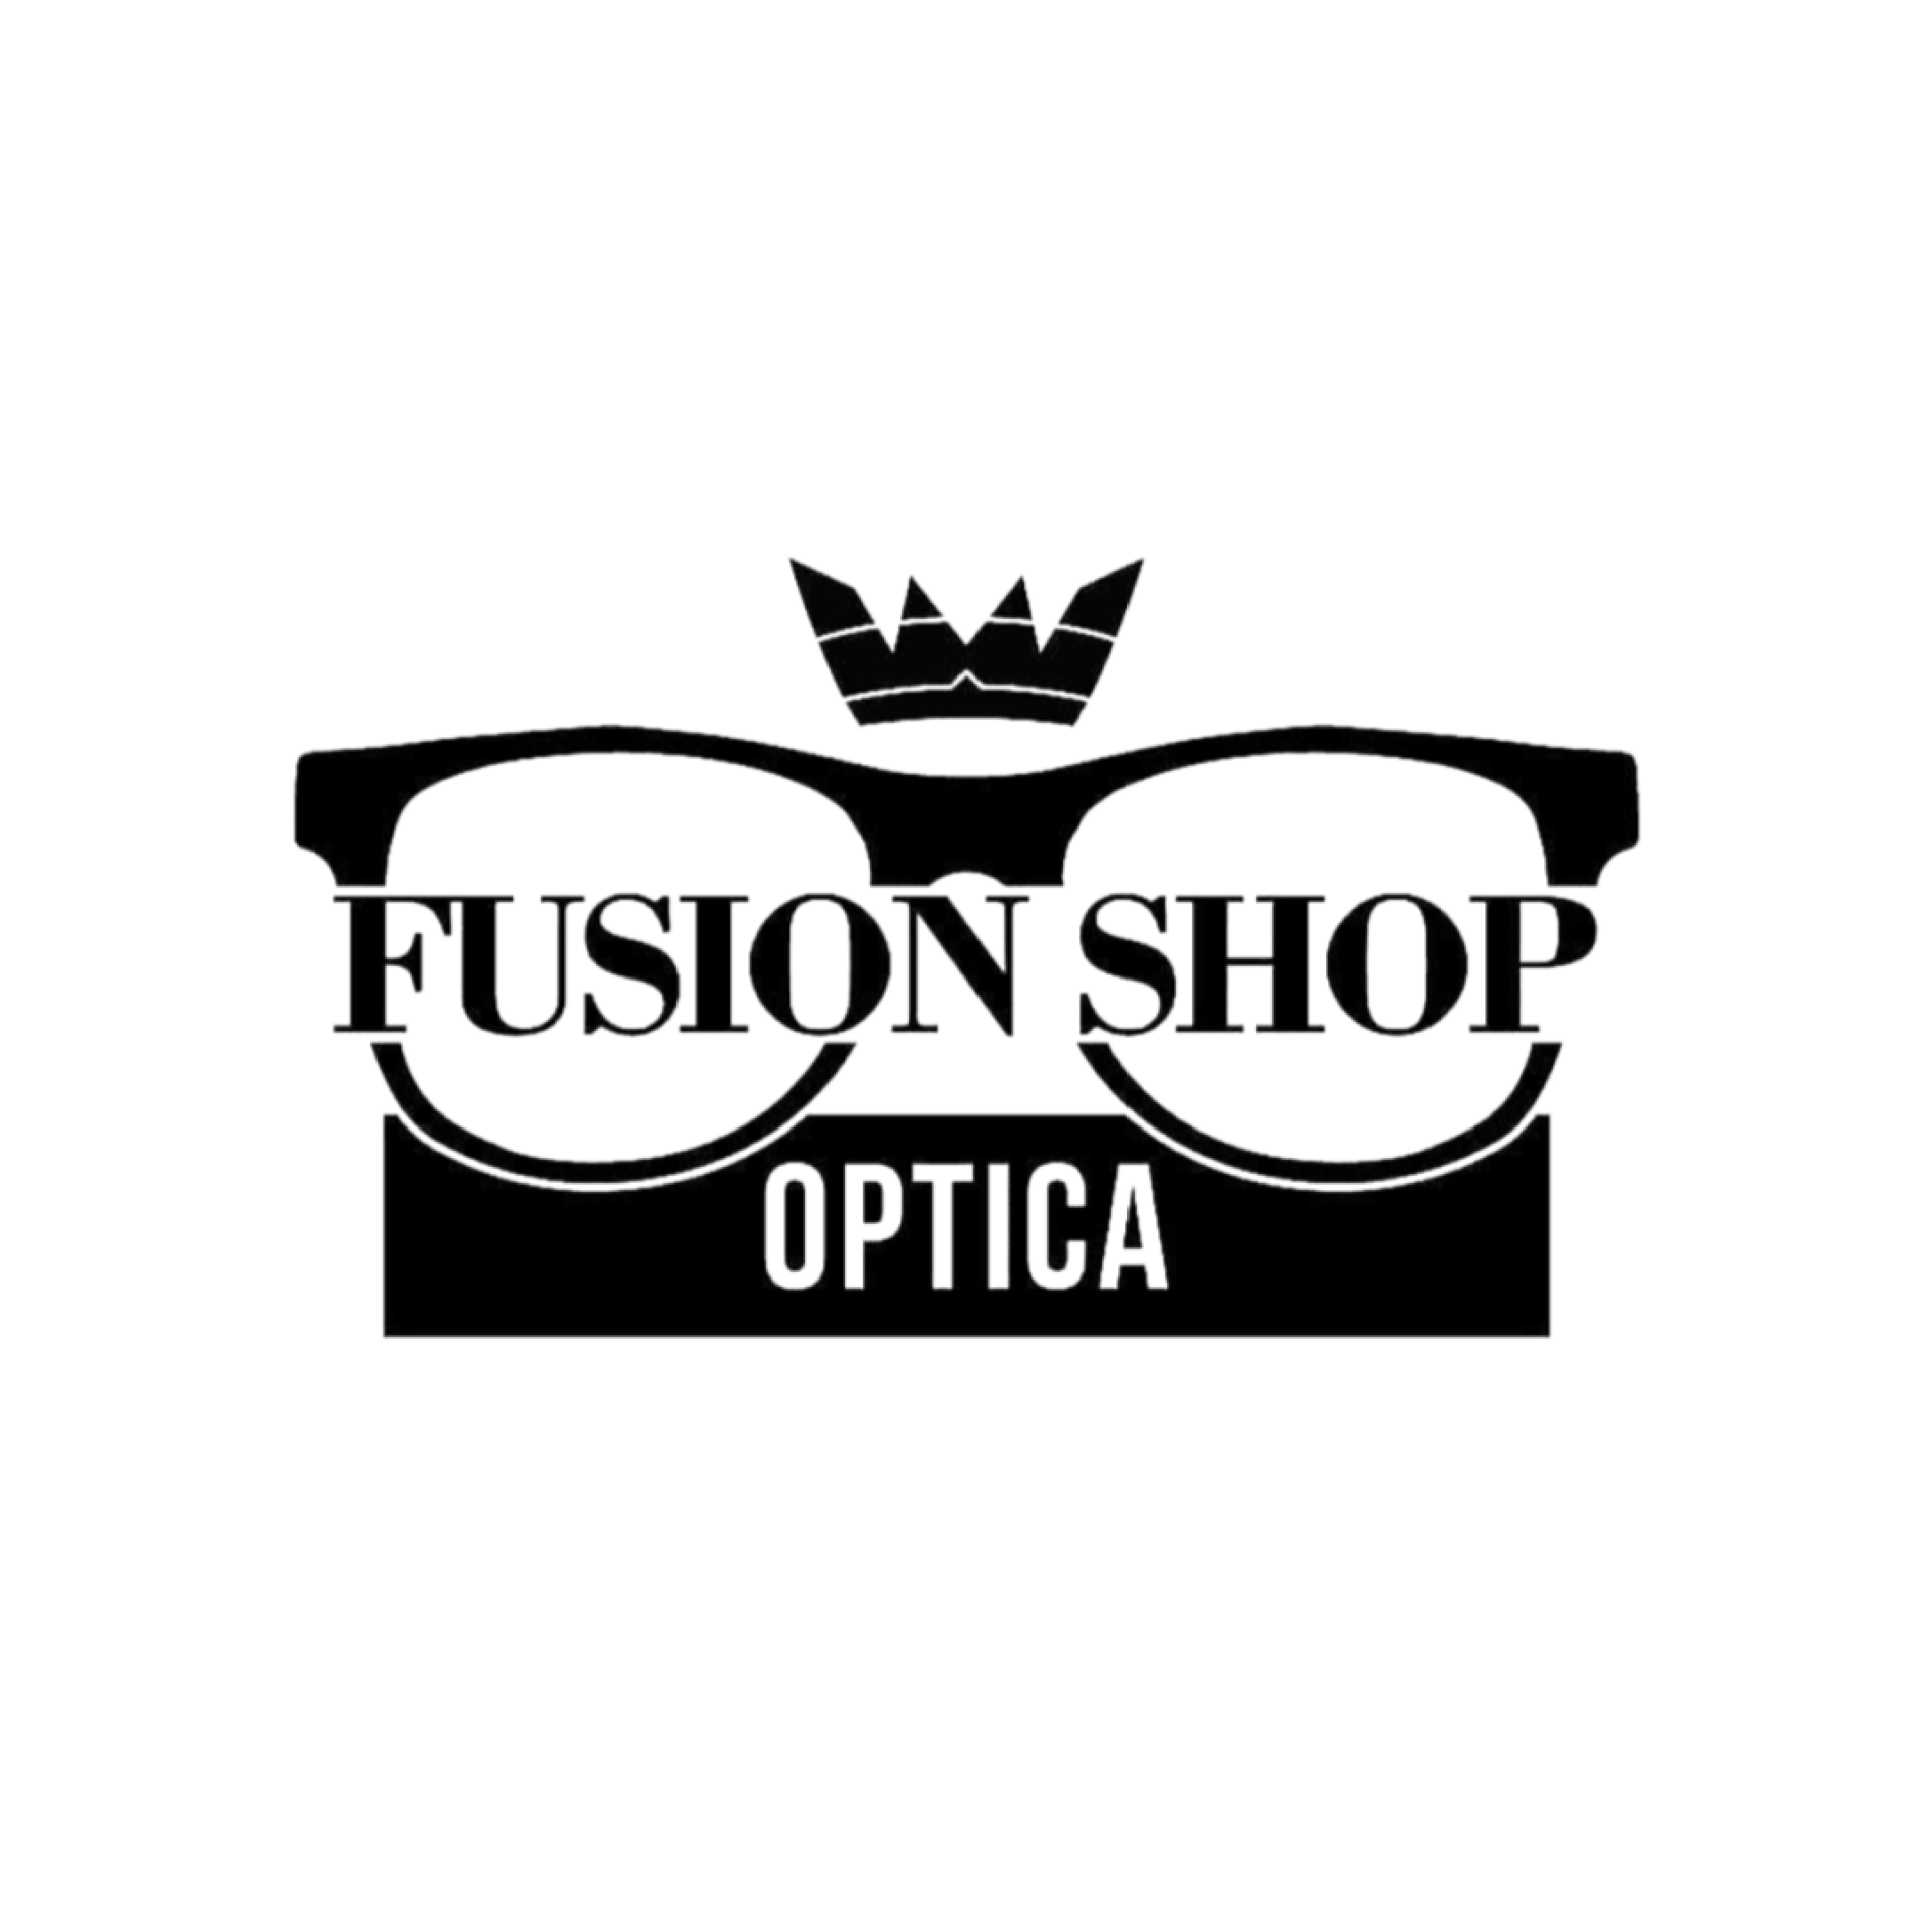 Fusion shop